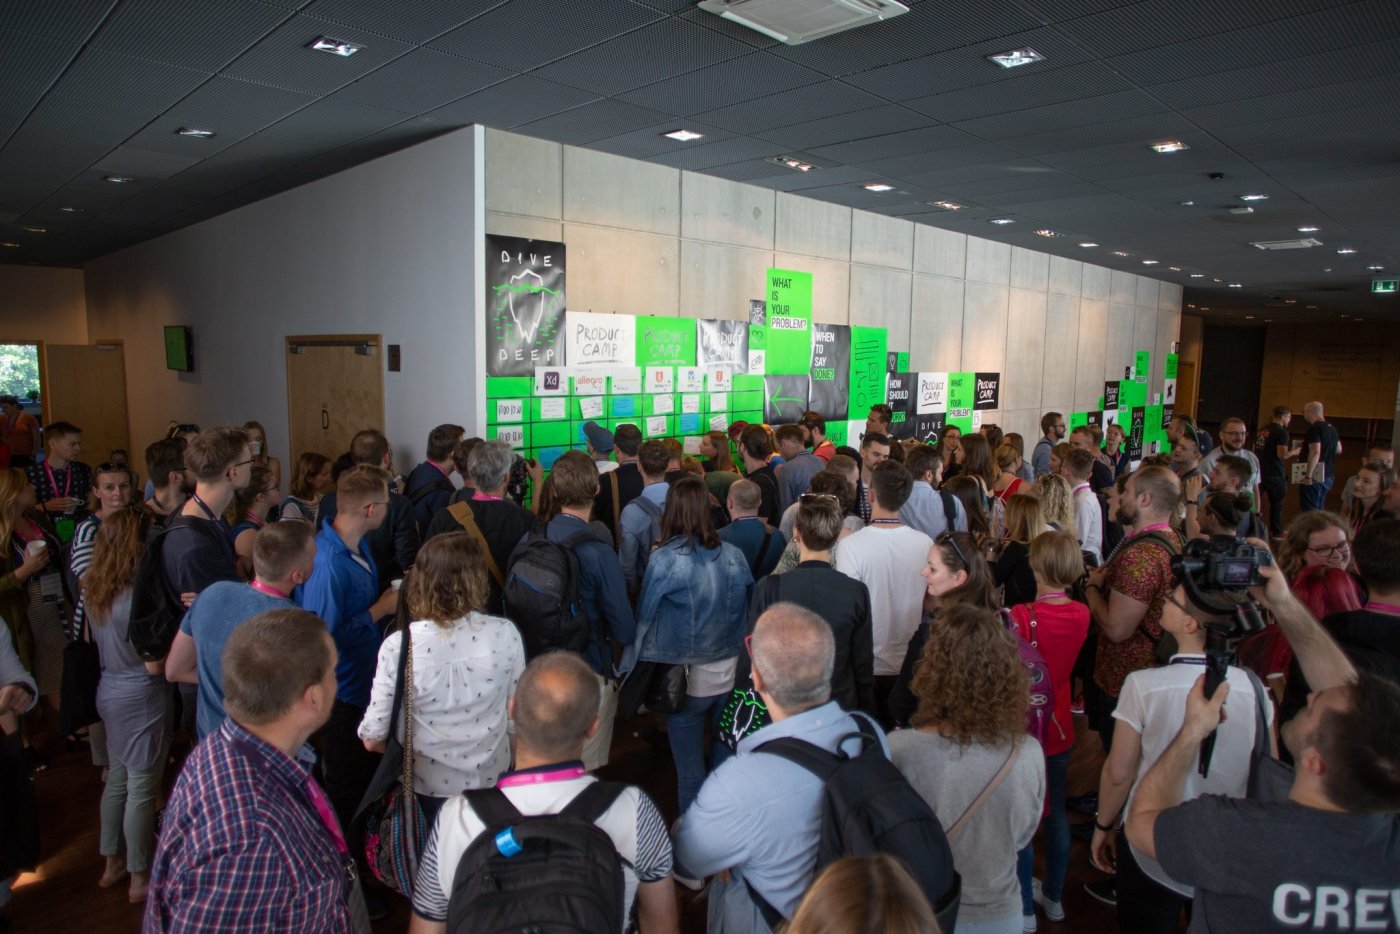 Korytarz PPNT Gdynia. Tłum ludzi w kierunku ściany z zielonymi plakatami